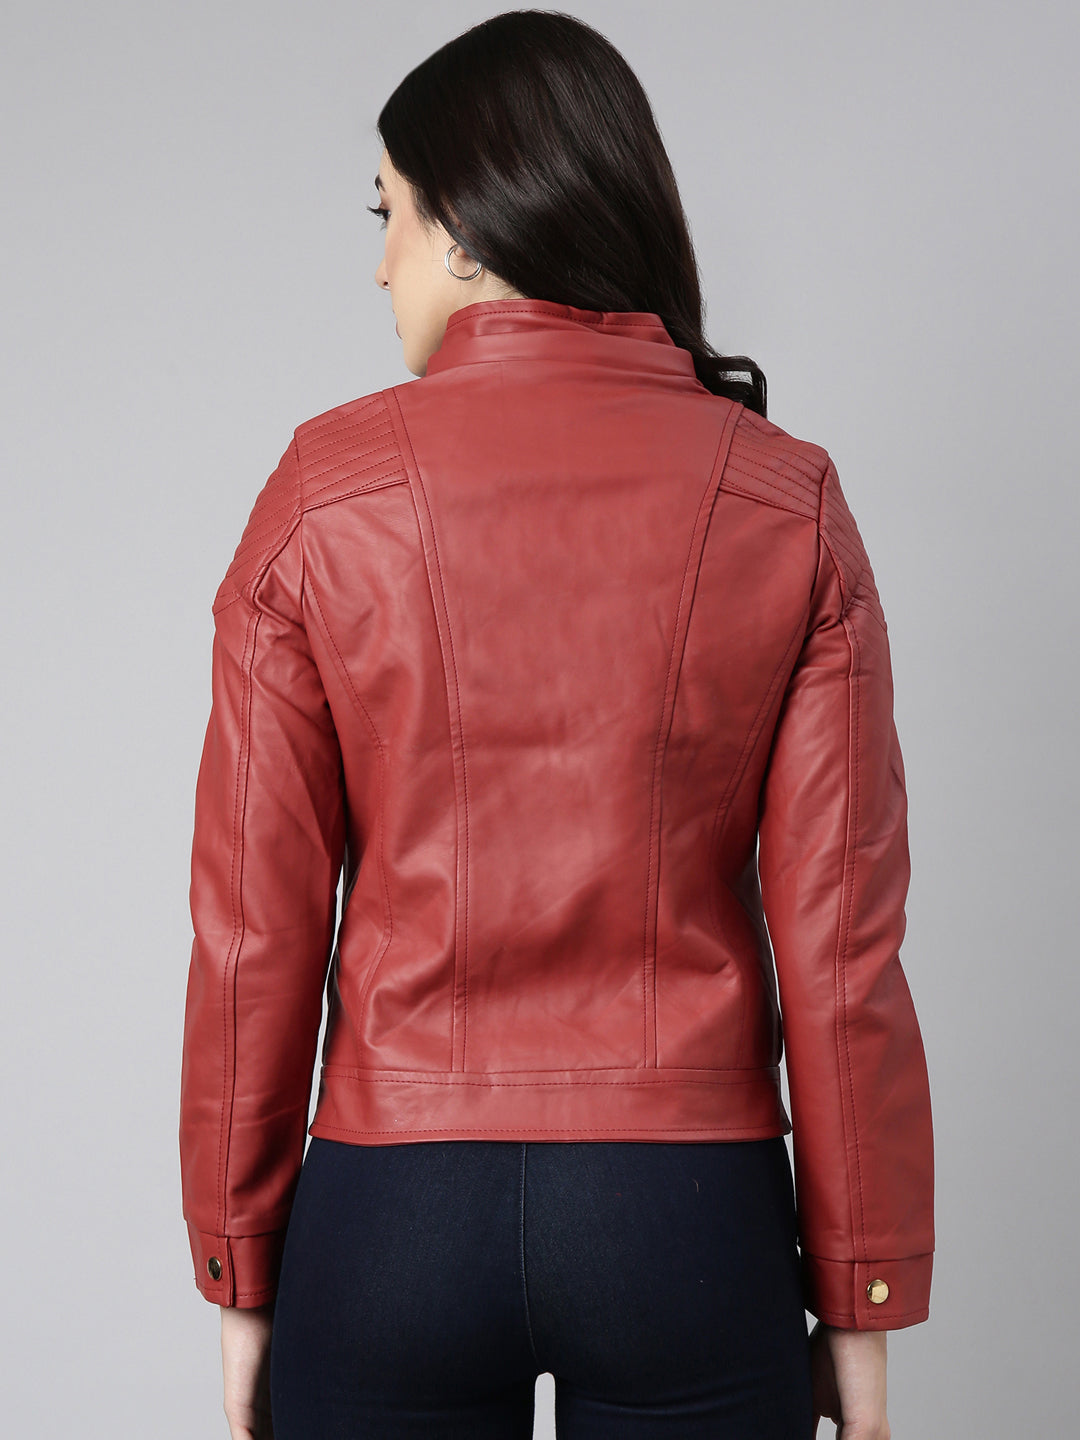 Women Solid Rust Biker Jacket Comes with Detachable Hood